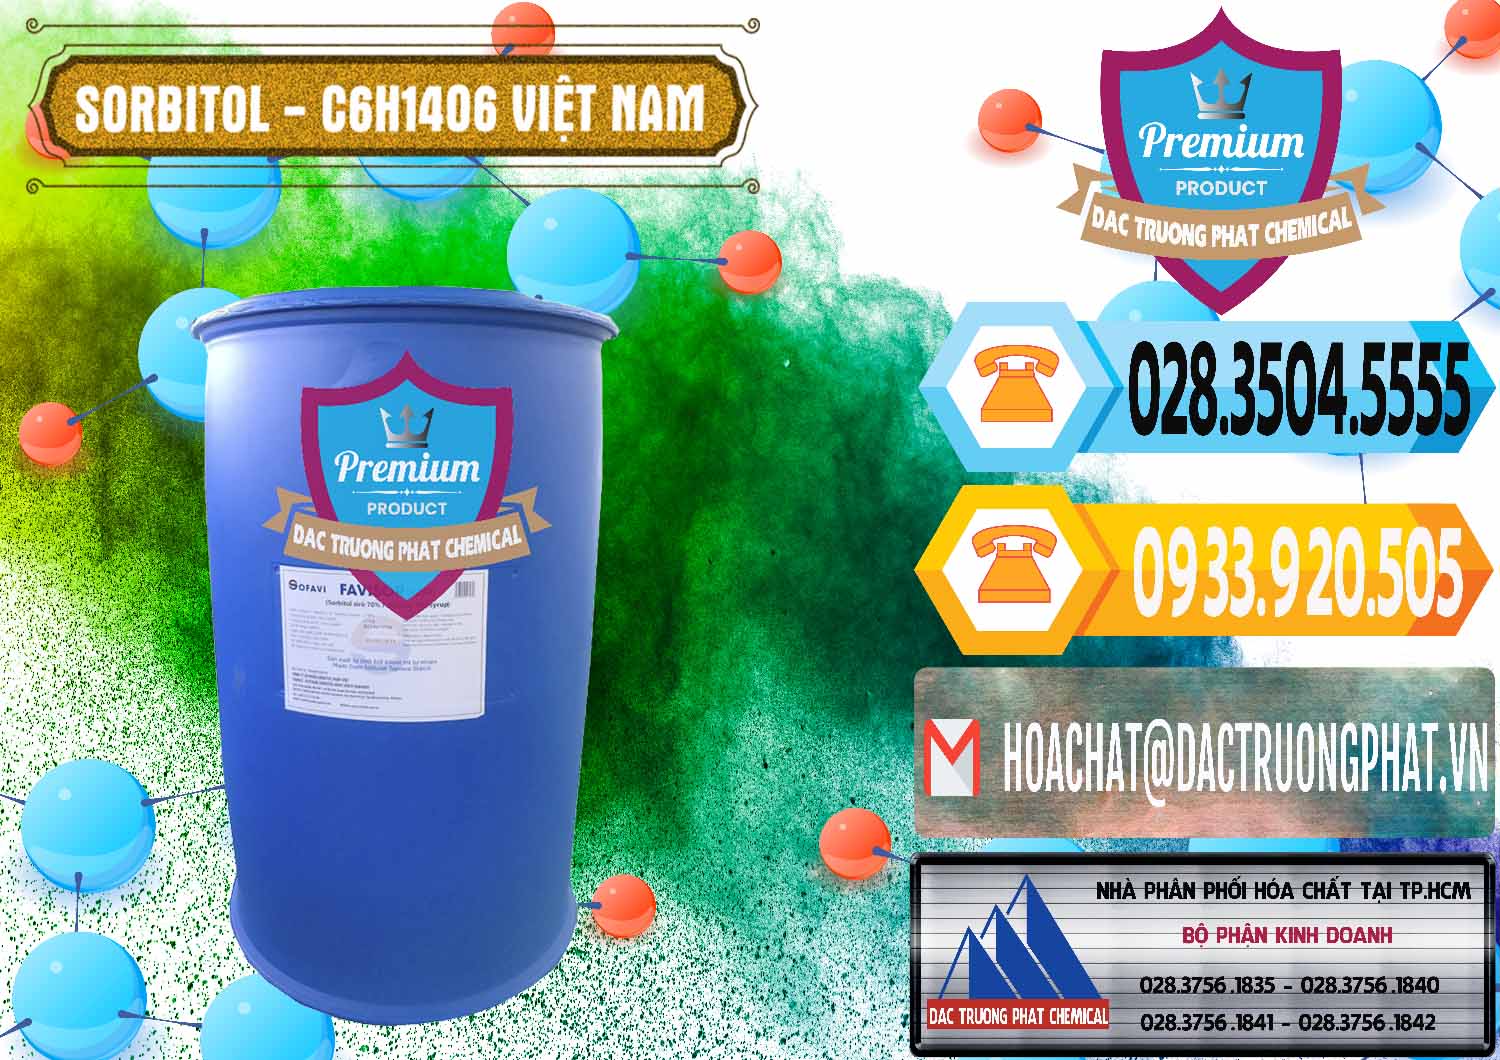 Nơi phân phối _ cung cấp Sorbitol - C6H14O6 Lỏng 70% Food Grade Việt Nam - 0438 - Đơn vị bán - cung cấp hóa chất tại TP.HCM - hoachattayrua.net